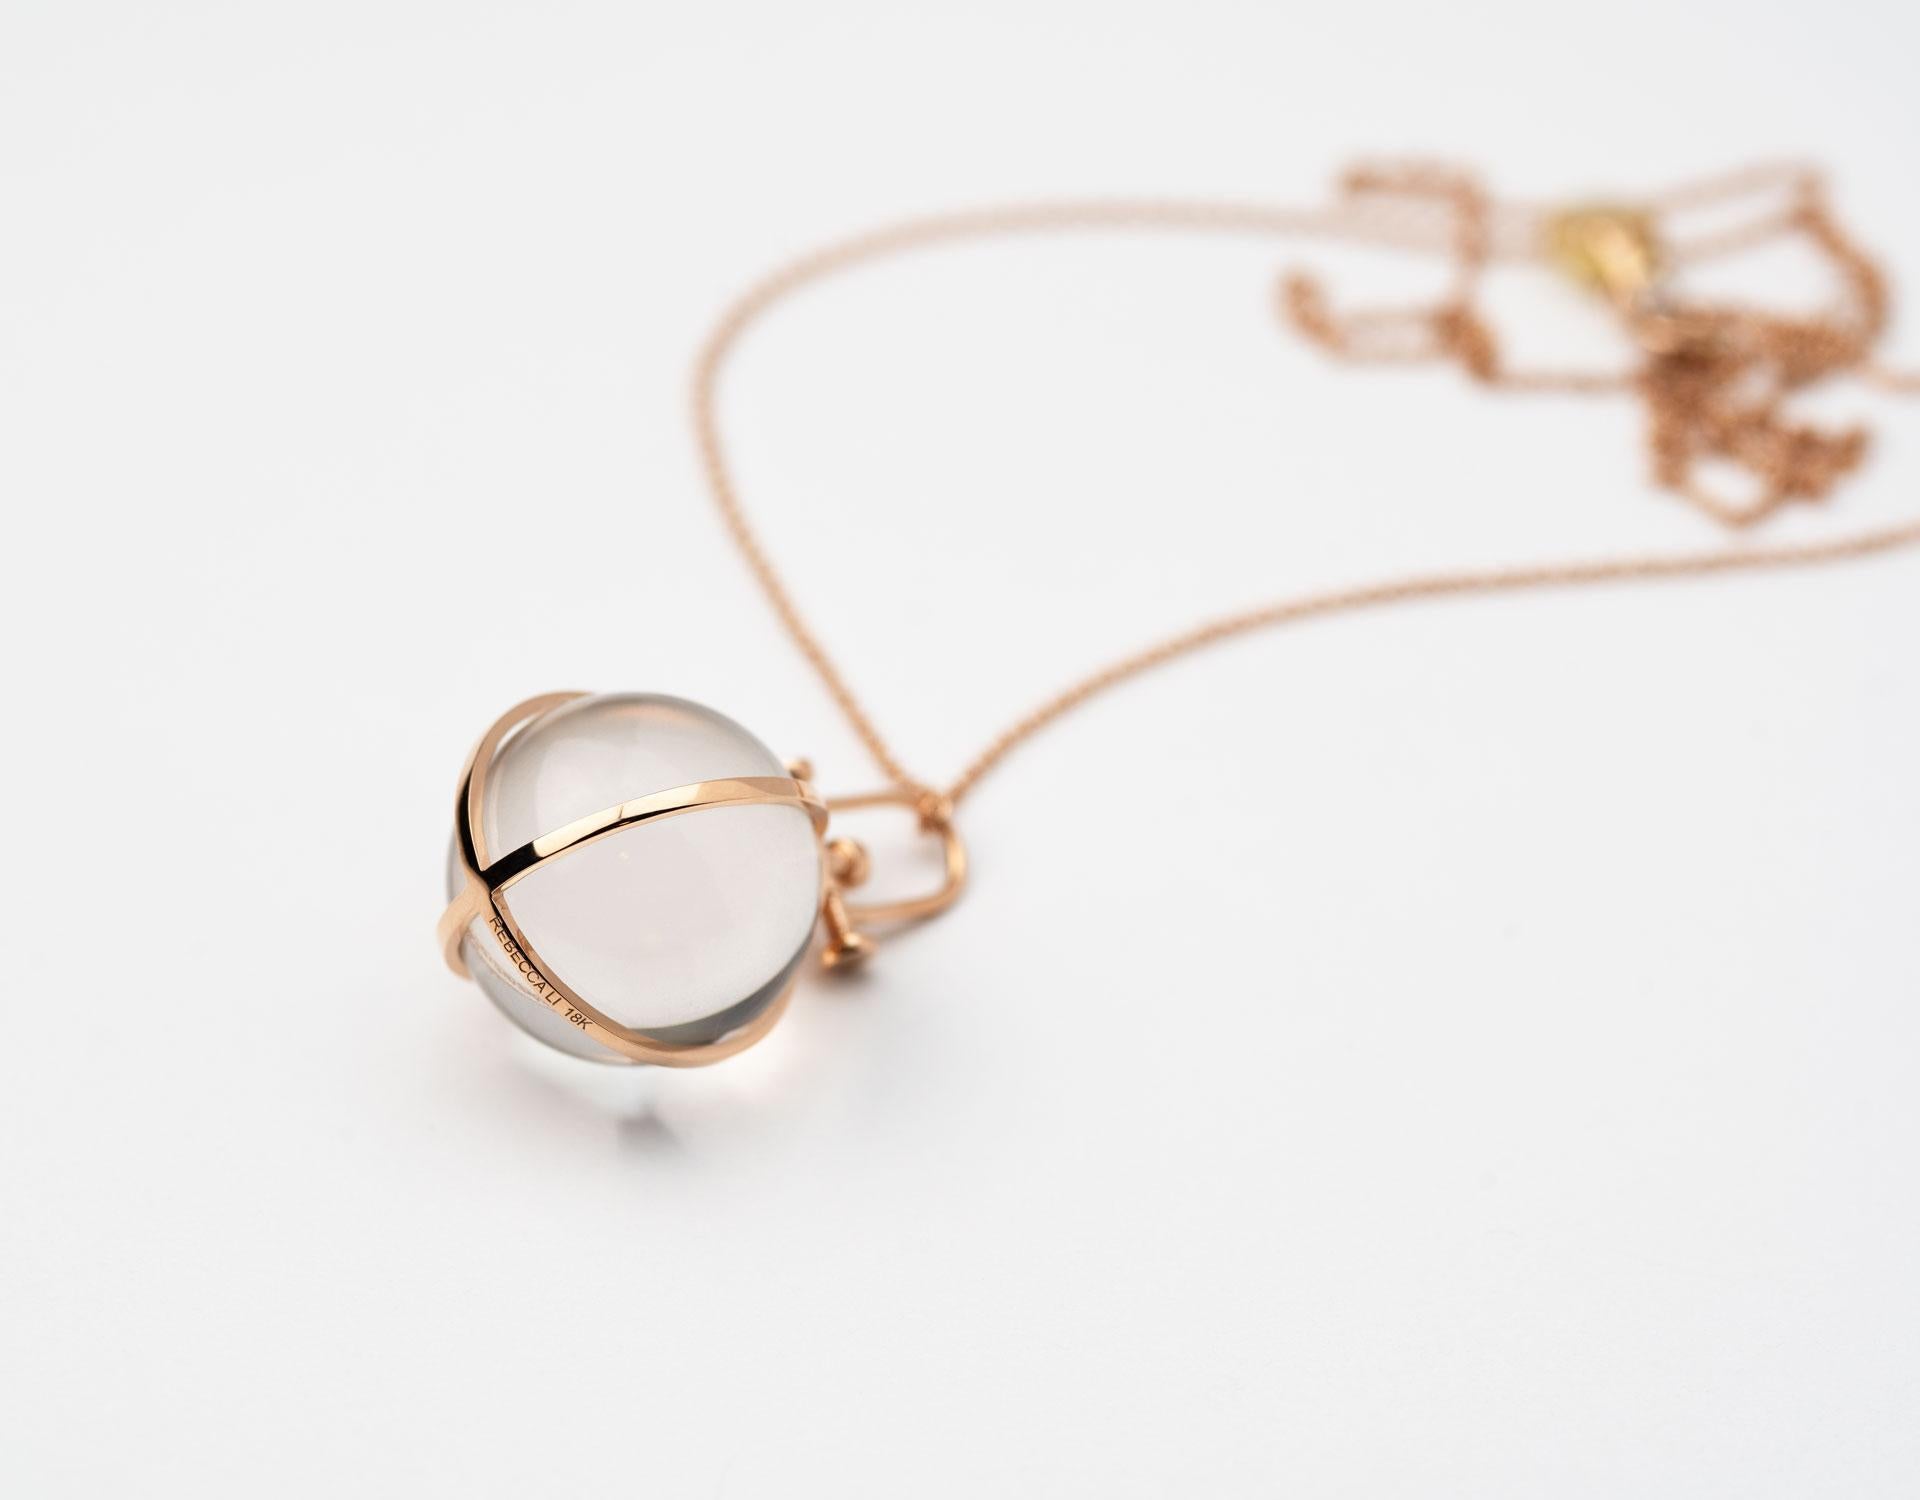 Rebecca Li conçoit Mindfulness. 
Ce collier fait partie de sa collection Crystal Orb.
Inspiré des anciens orbes de cristal, il est conçu pour nous rappeler notre propre pouvoir magique.

Le cristal de roche naturel est synonyme de positivité, de